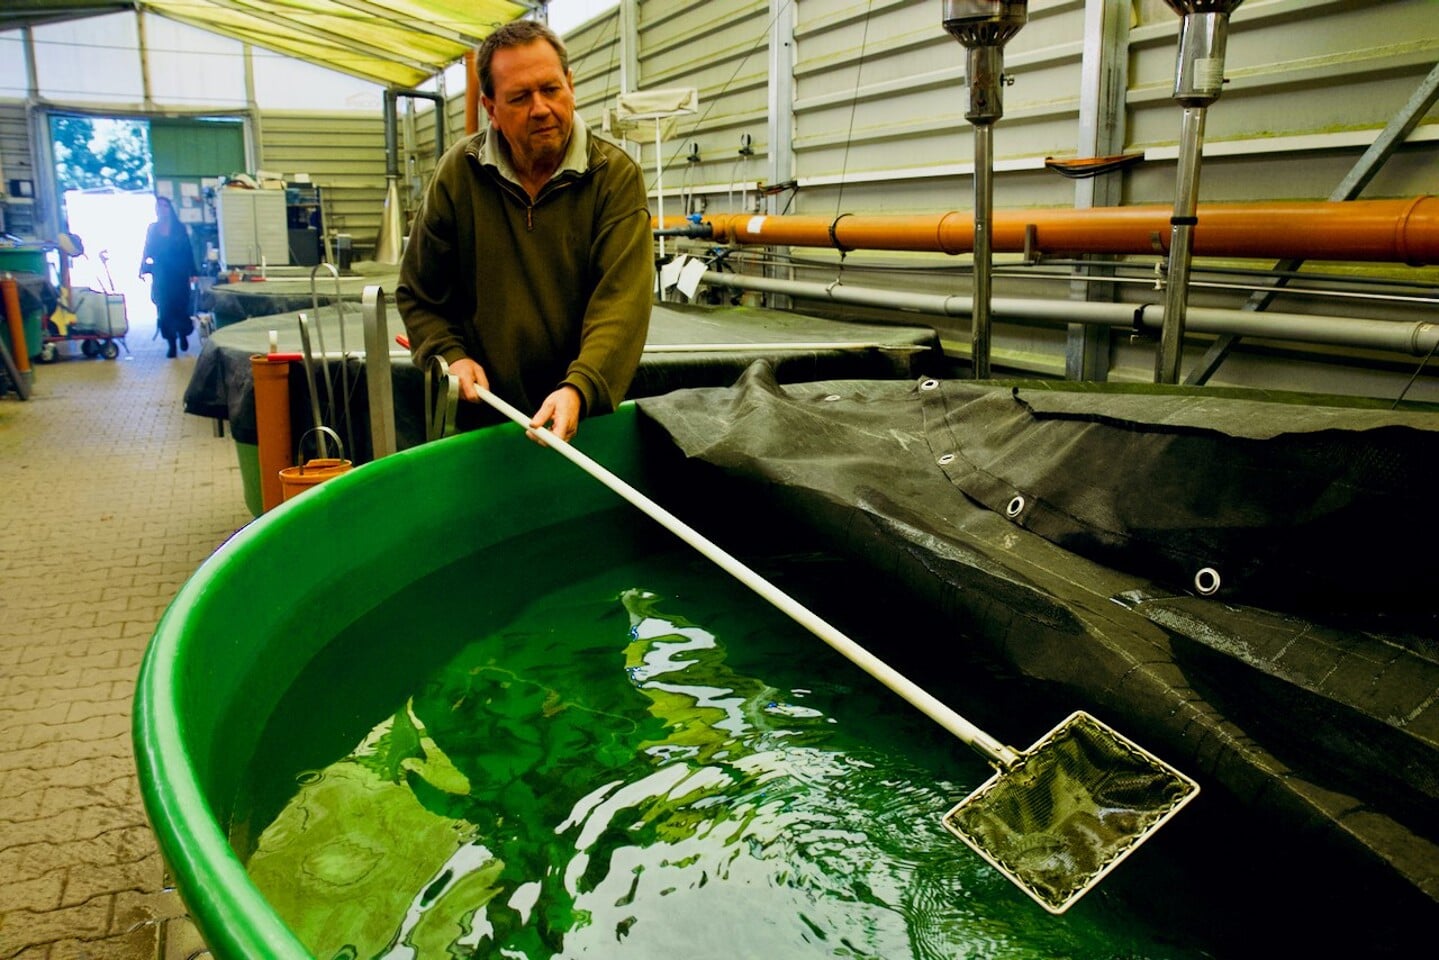 H Ditmar Firzlaff is particulier viskweker, die met zijn eigen aquacultuurbedrijf Aquafuture de jonge zalmen kweekt voor de Lachsverein van Hagemeyer. De zalmpjes zwemmen in bakken met een kolk die de stroming van rivieren imiteert.